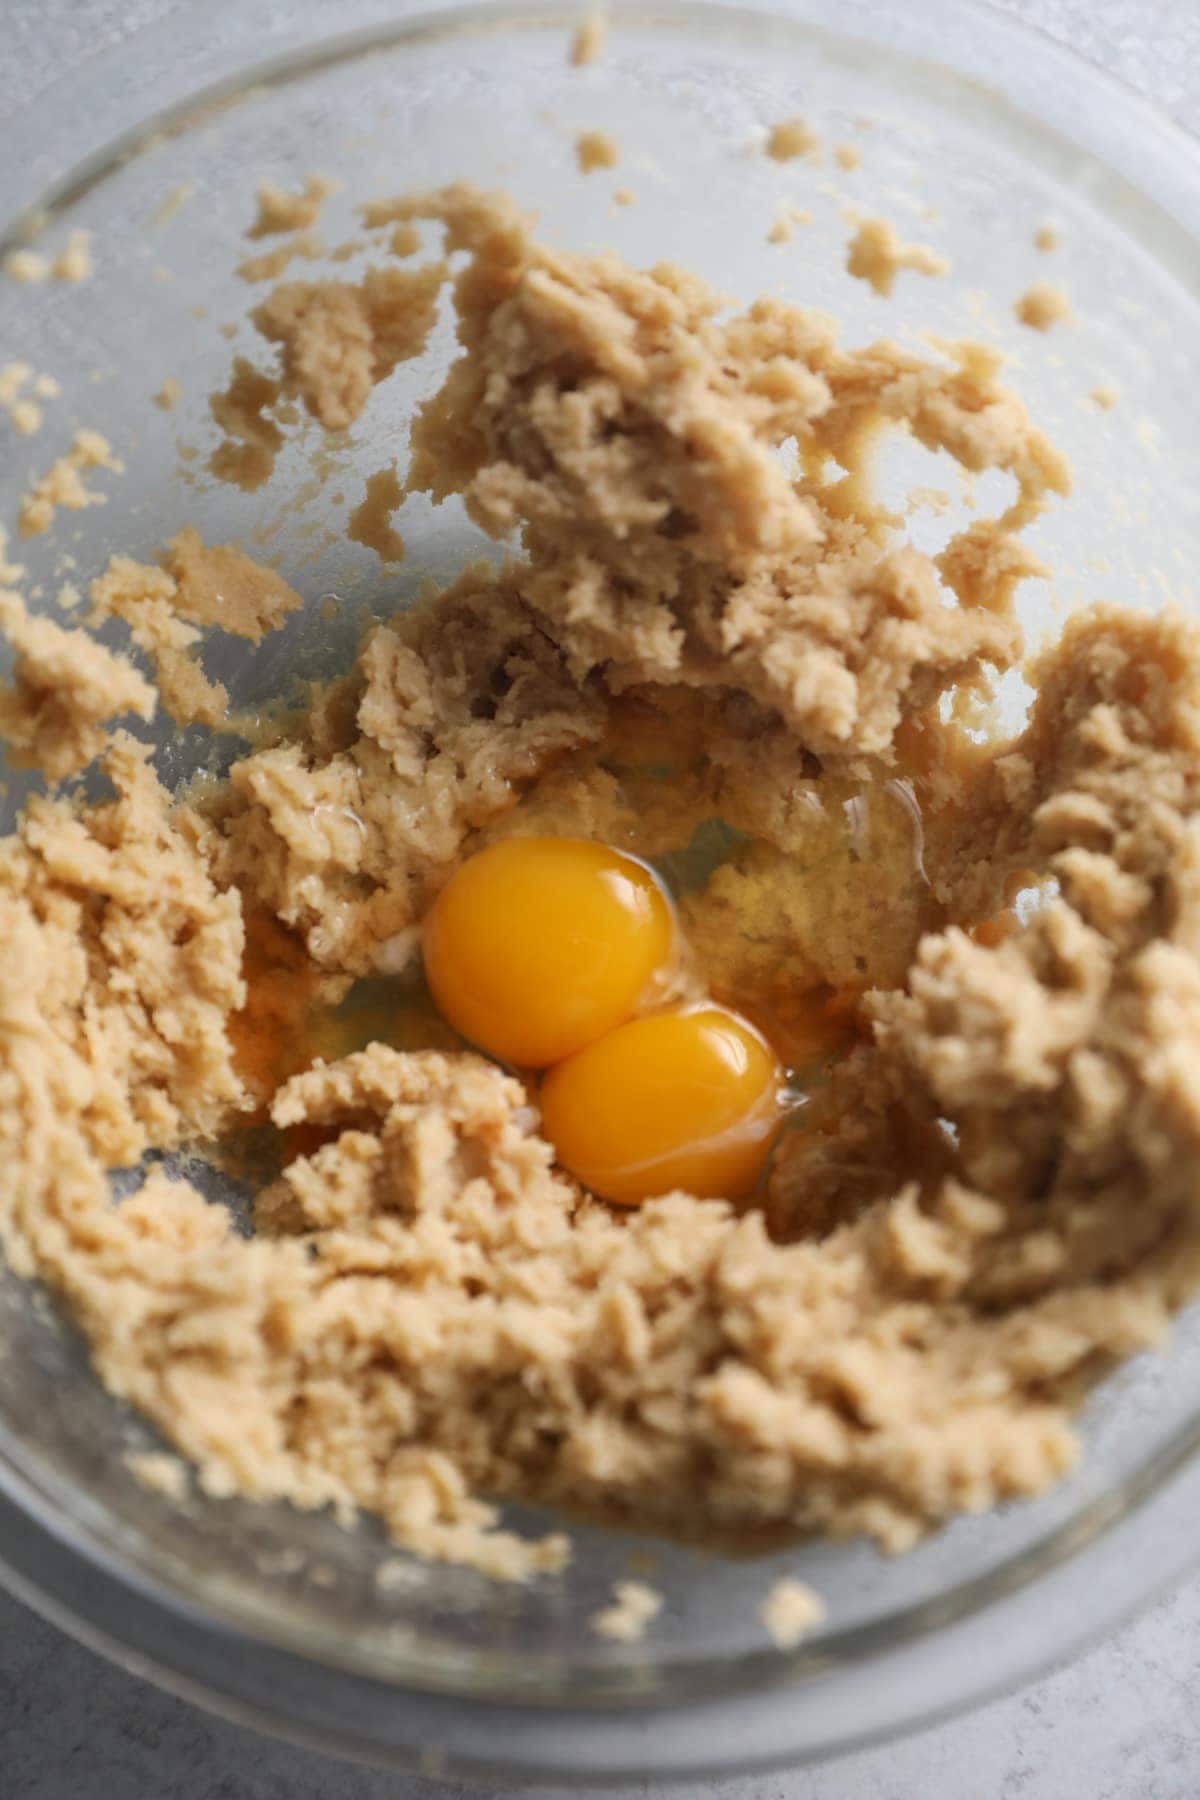 Add in Eggs